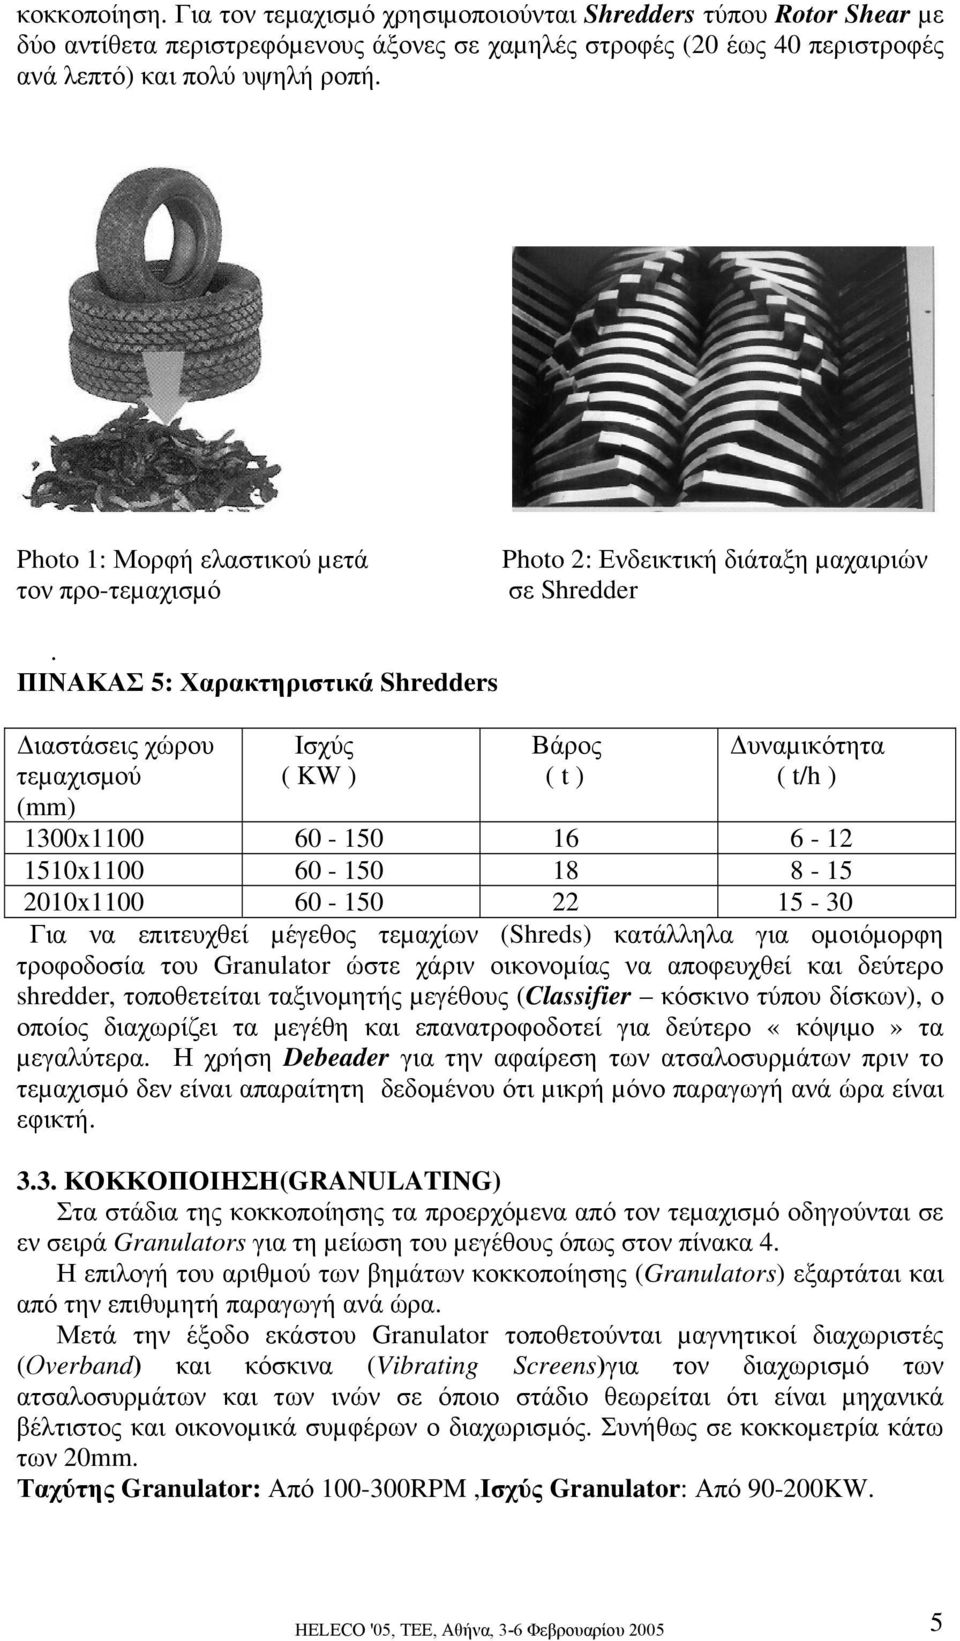 ΠΙΝΑΚΑΣ 5: Χαρακτηριστικά Shredders ιαστάσεις χώρου τεµαχισµού (mm) Ισχύς ( KW ) Βάρος ( t ) υναµικότητα ( t/h ) 1300x1100 60-150 16 6-12 1510x1100 60-150 18 8-15 2010x1100 60-150 22 15-30 Για να